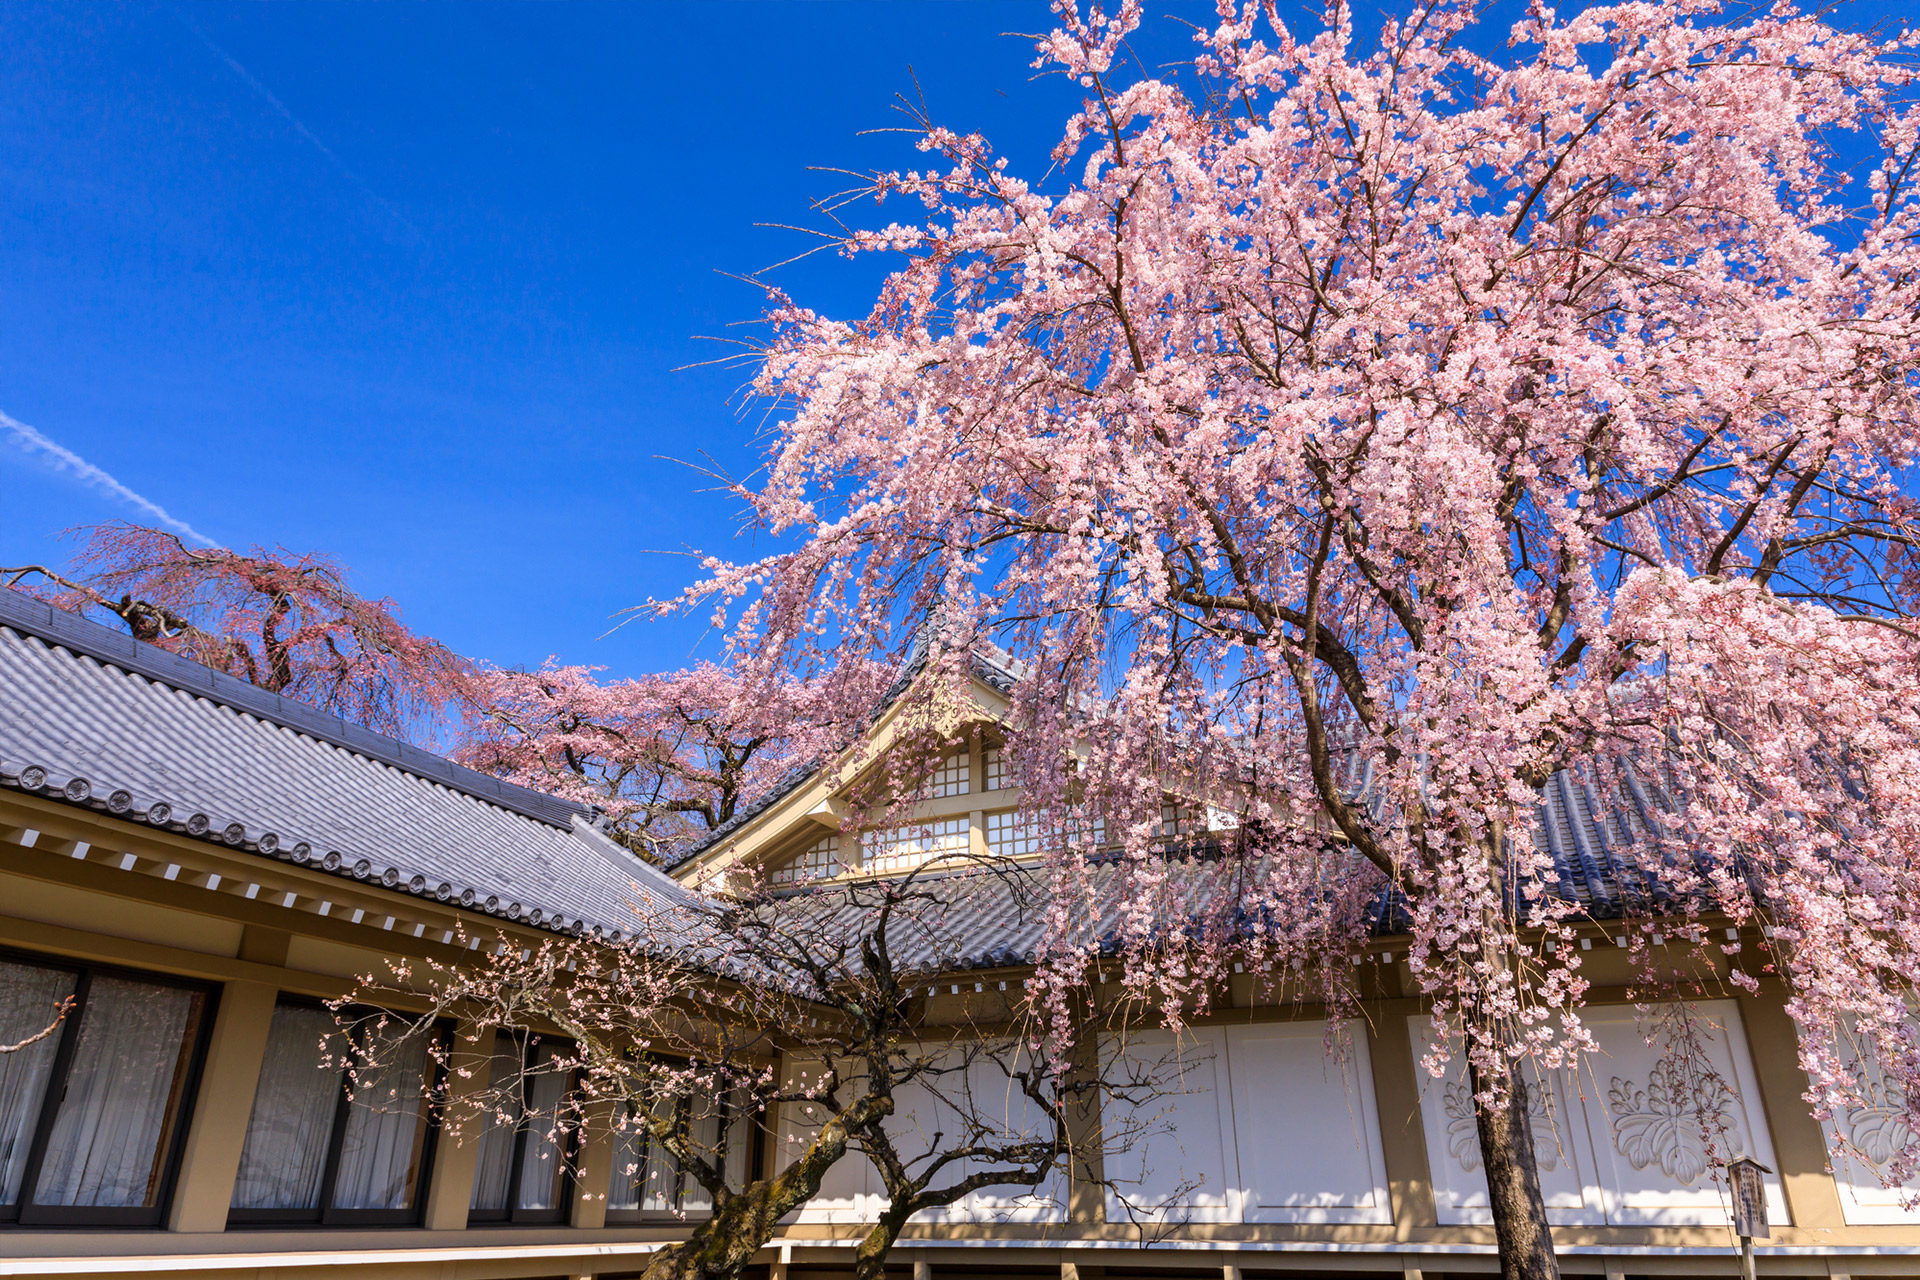 京都-醍醐寺-桜